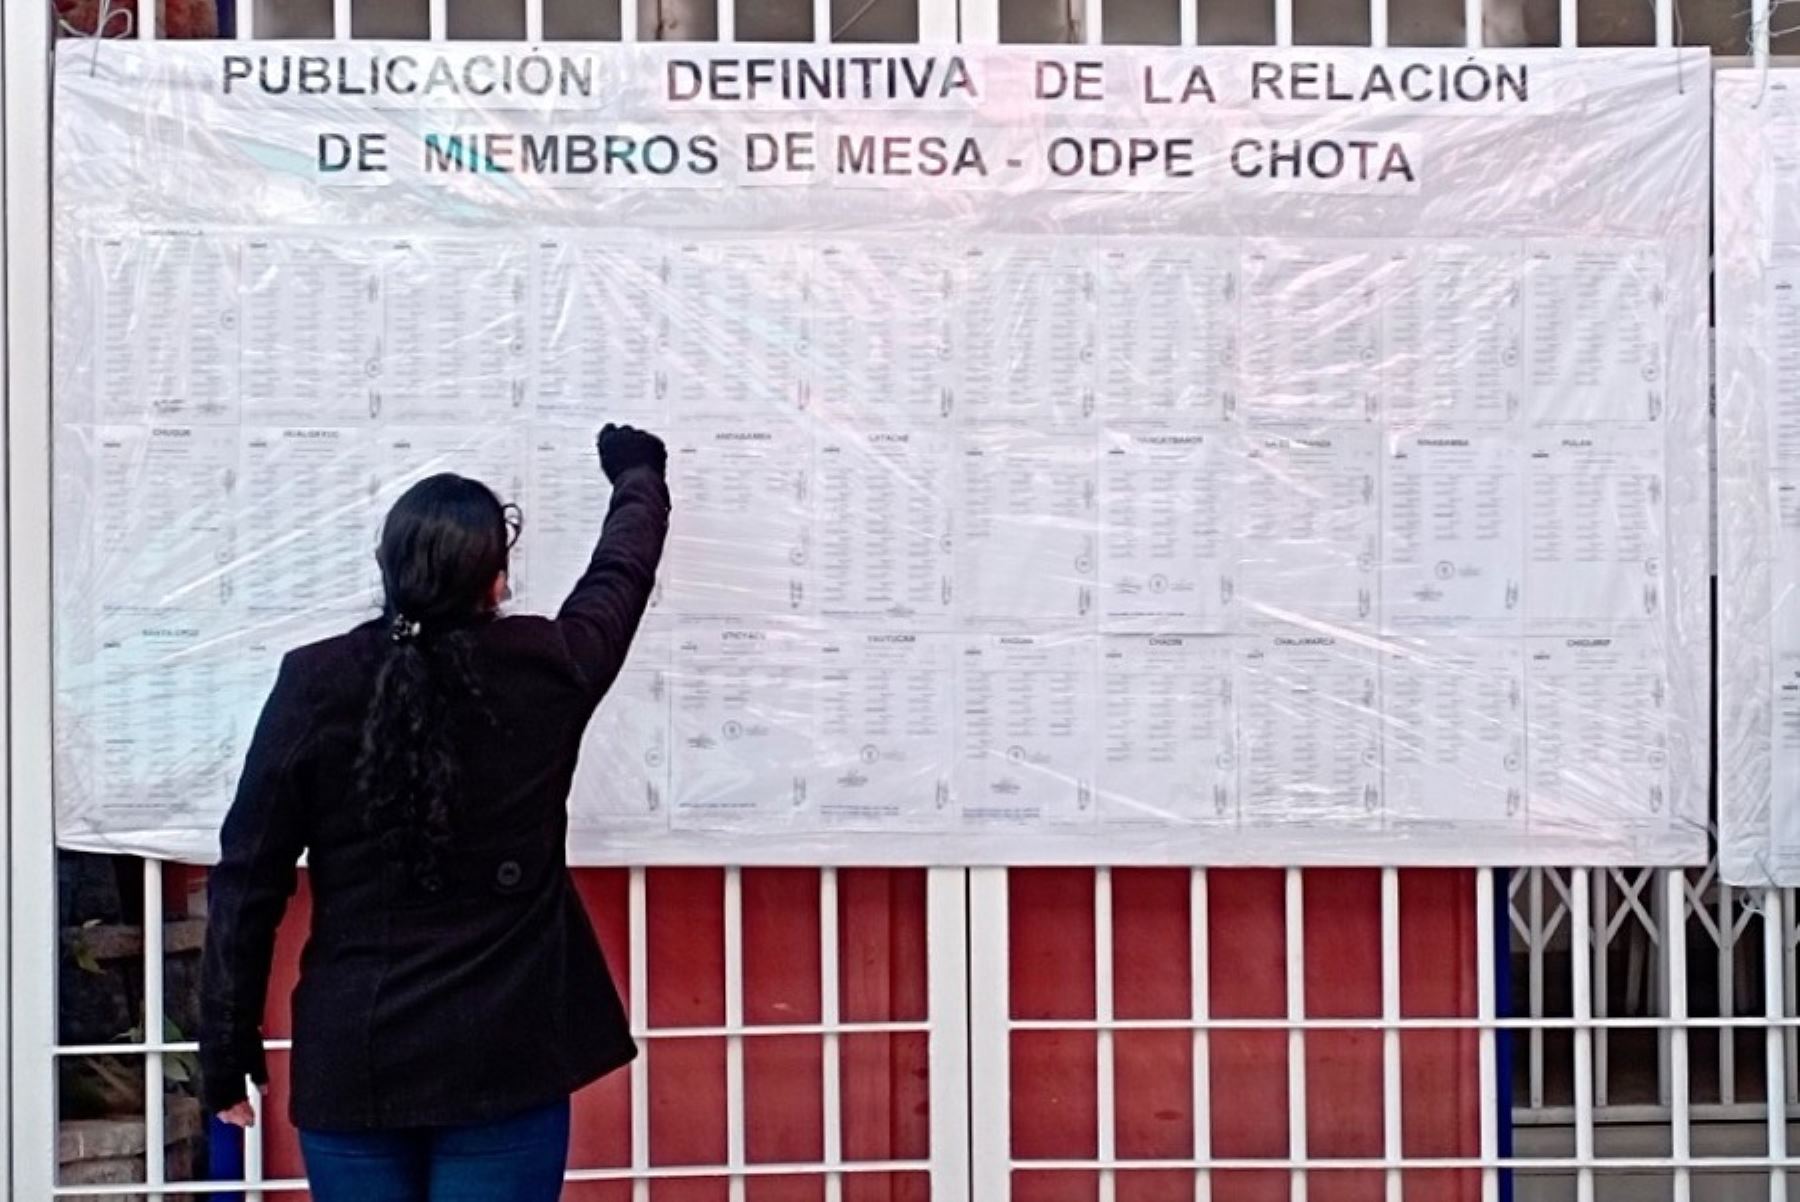 La Oficina Descentralizada de Procesos Electorales Chota publicó las listas definitivas de los 4,824 miembros de mesa, entre titulares y suplentes, de las provincias de Chota, Hualgayoc y Santa Cruz.